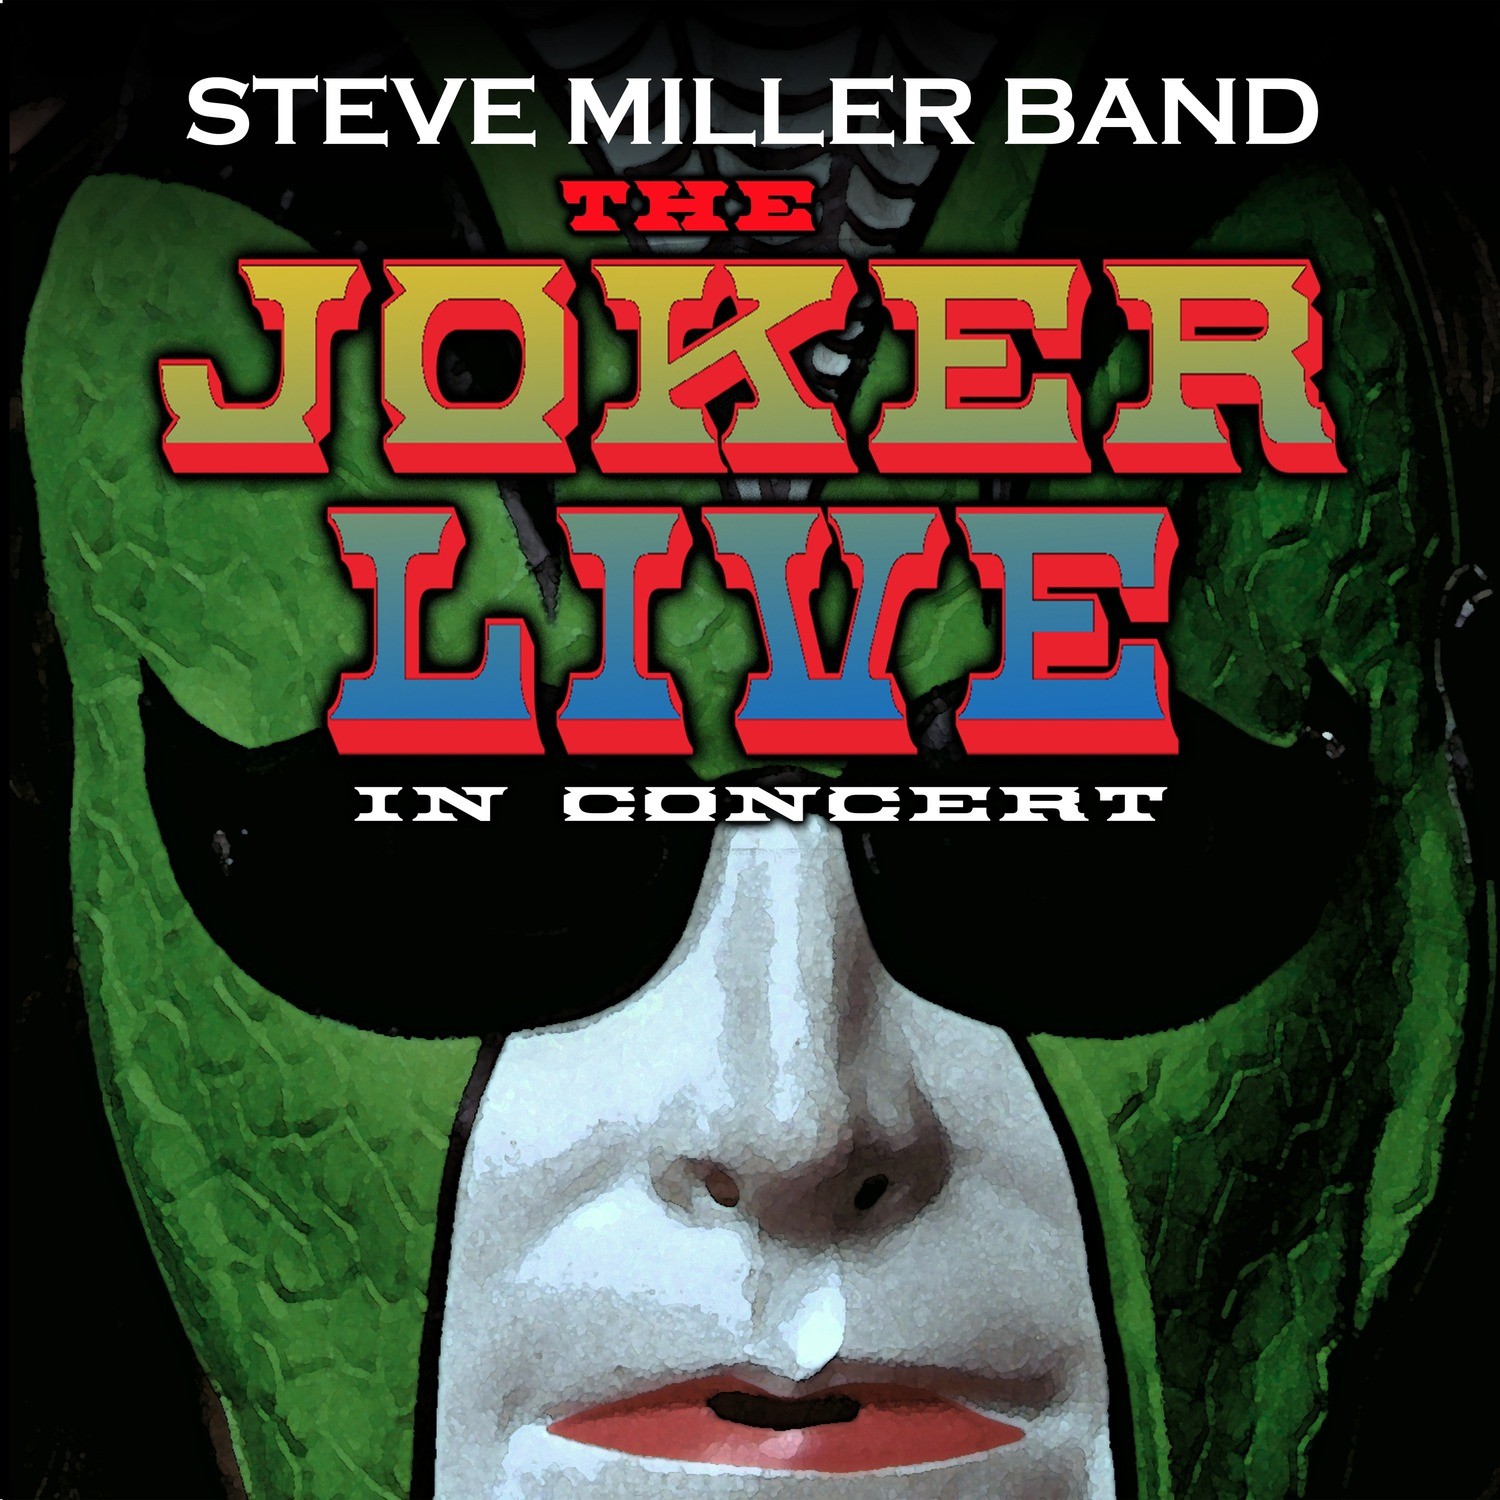 Steve miller band the joker album wiki